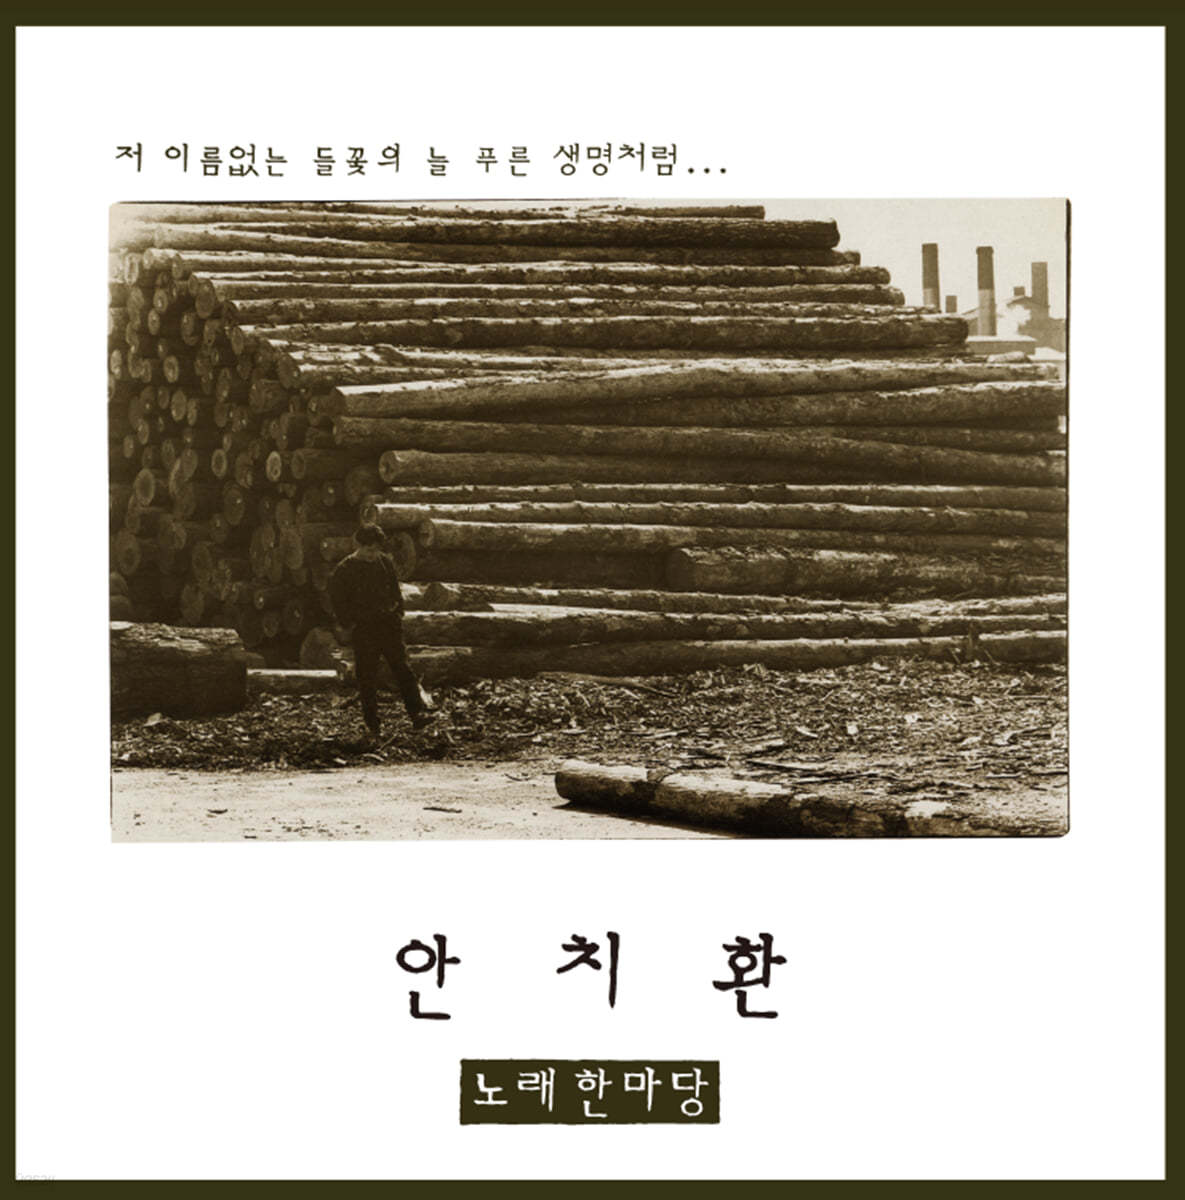 안치환 - 2집 노래한마당 [LP] 